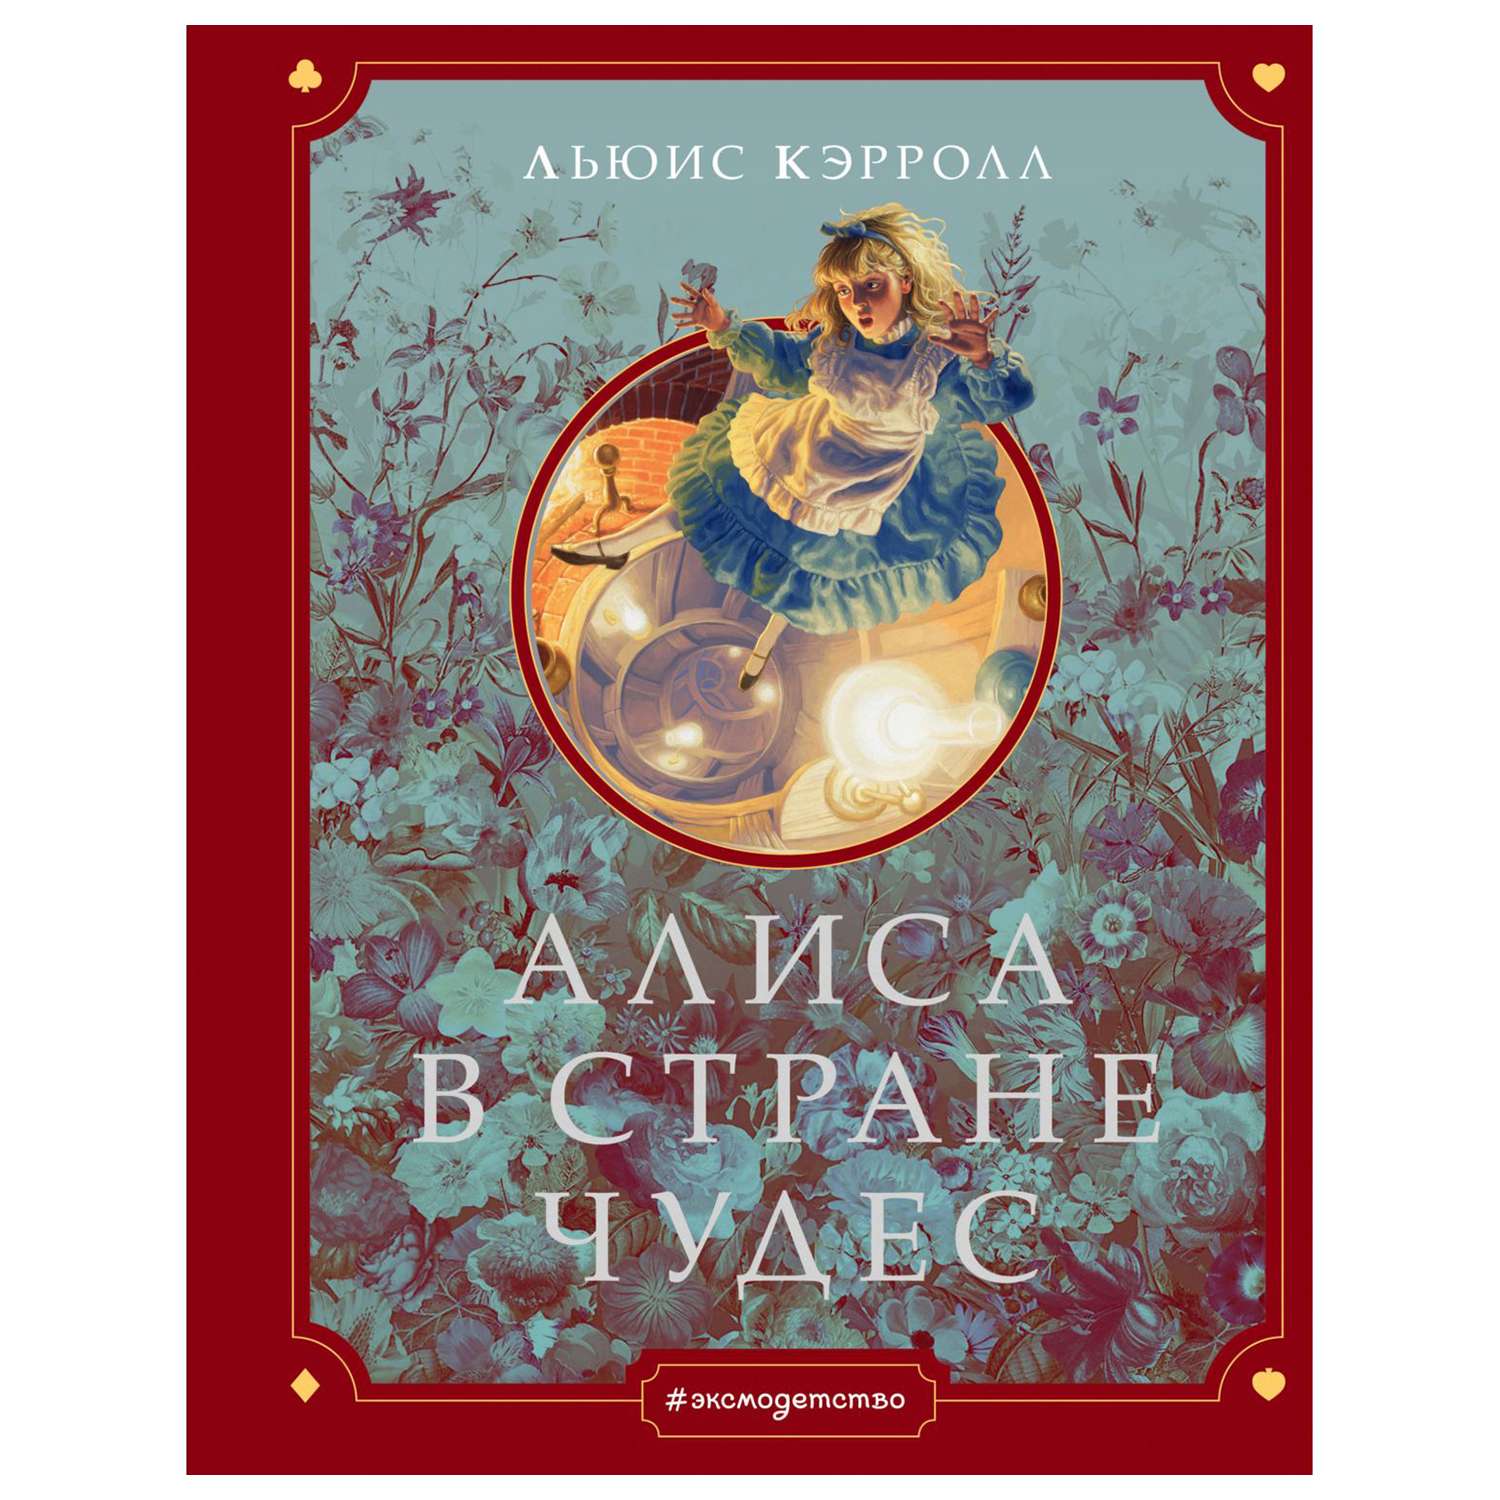 Книга Эксмо Алиса в Стране чудес иллюстрации Хильдебрандта - фото 1